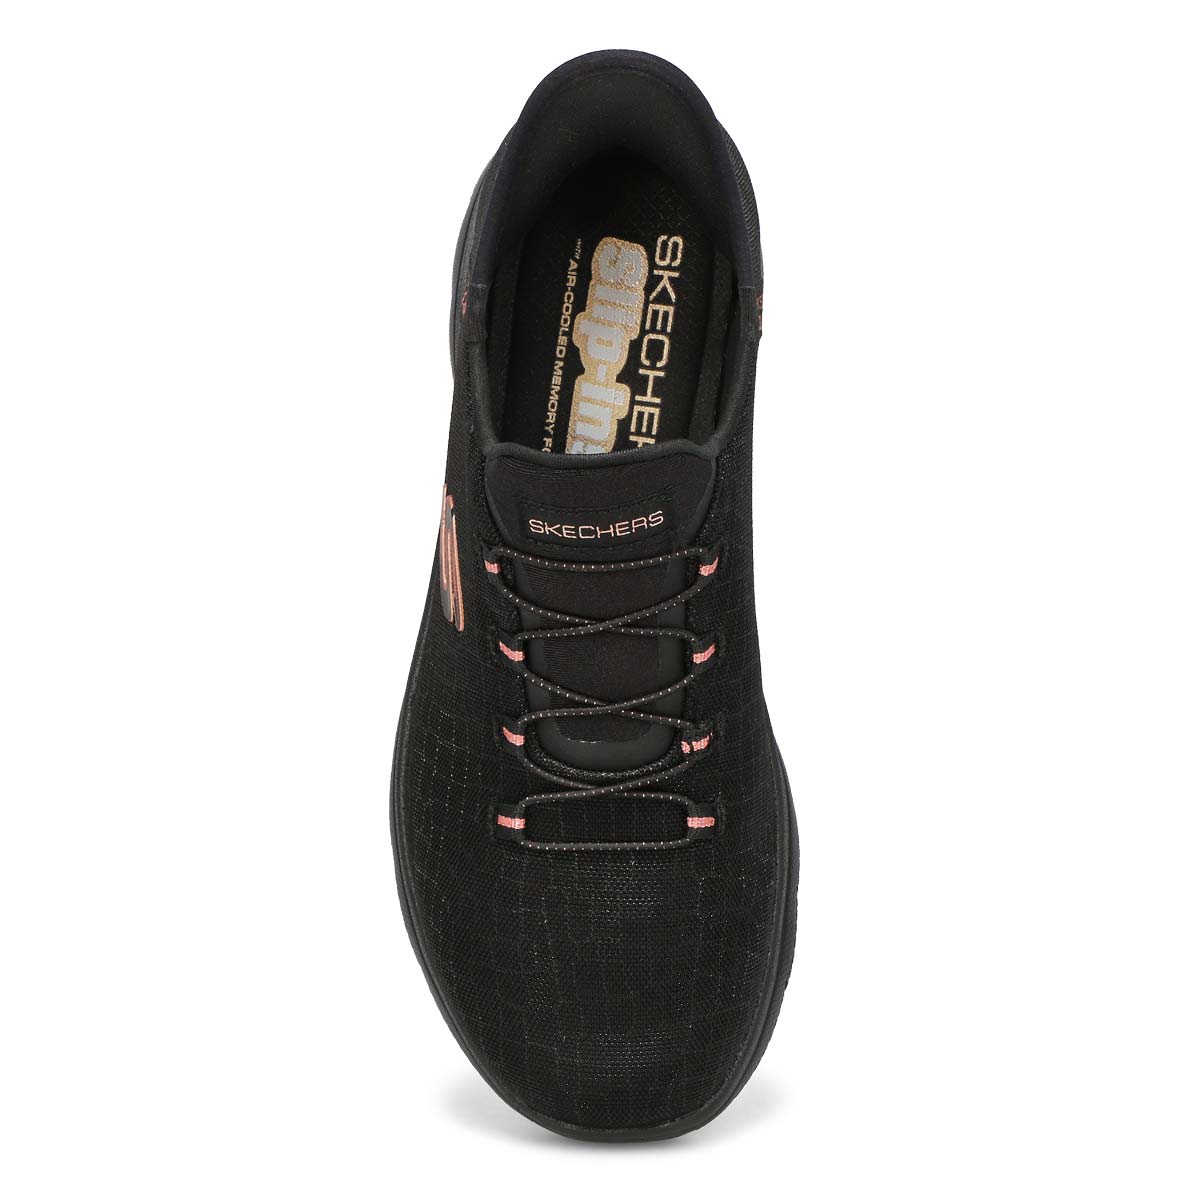 Womens Summits Classy Night Slip-Ins Sneaker - Black/Gold